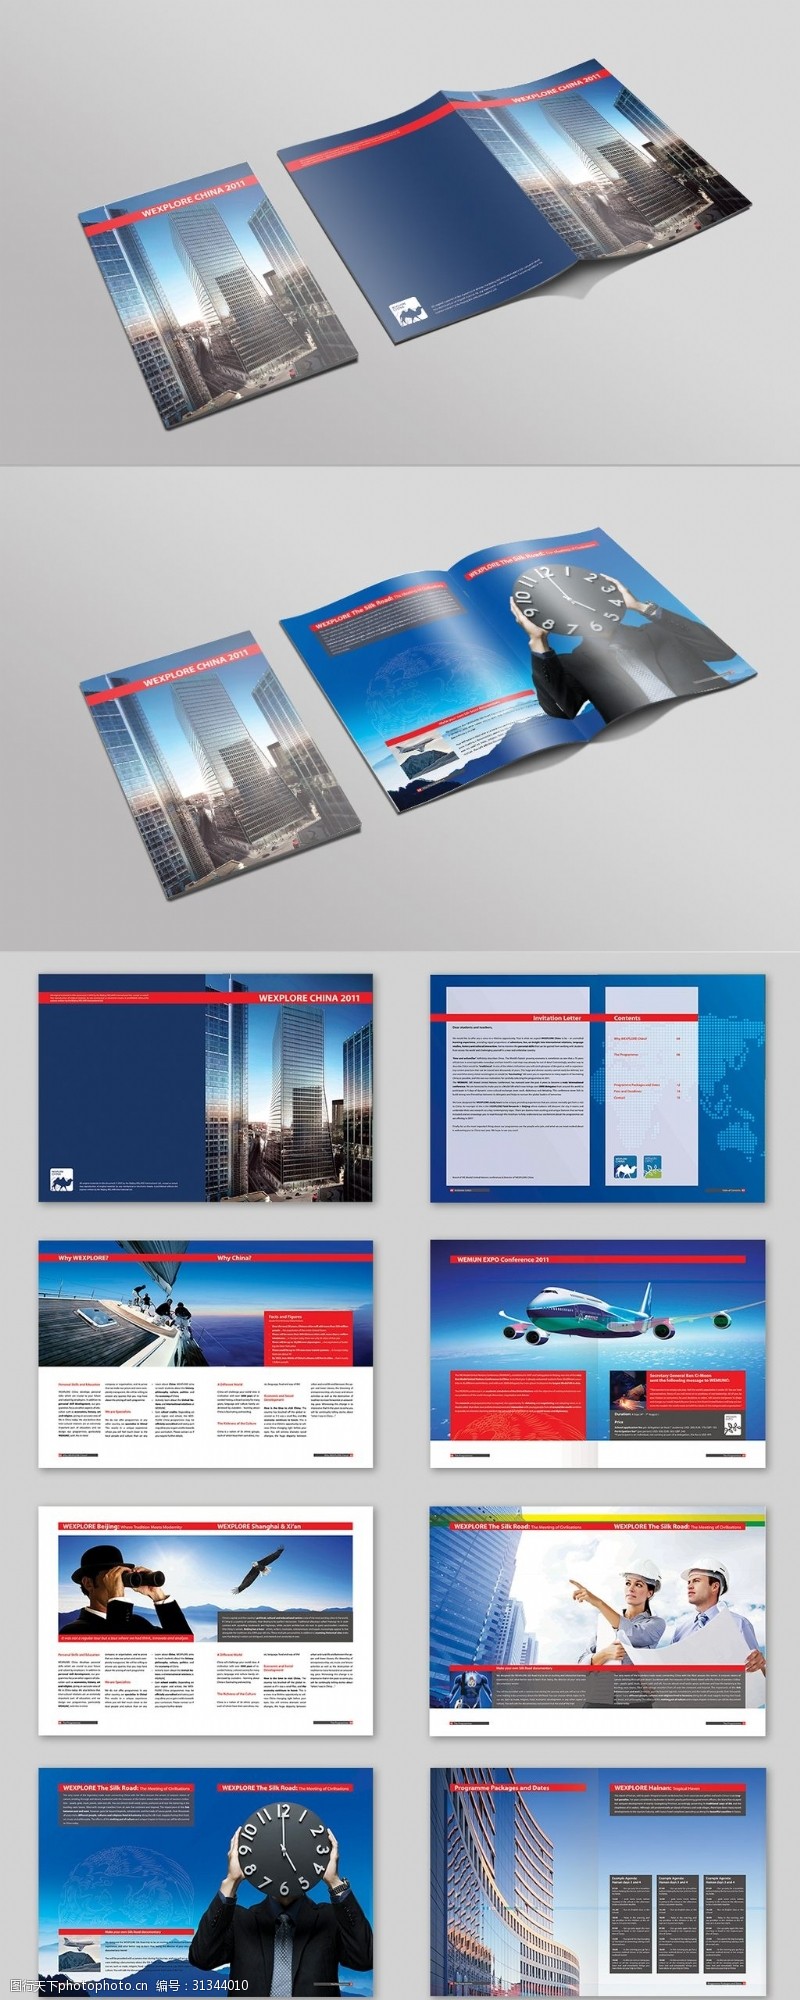 企业画册模板下载金融企业文化宣传画册设计模板PS格式下载